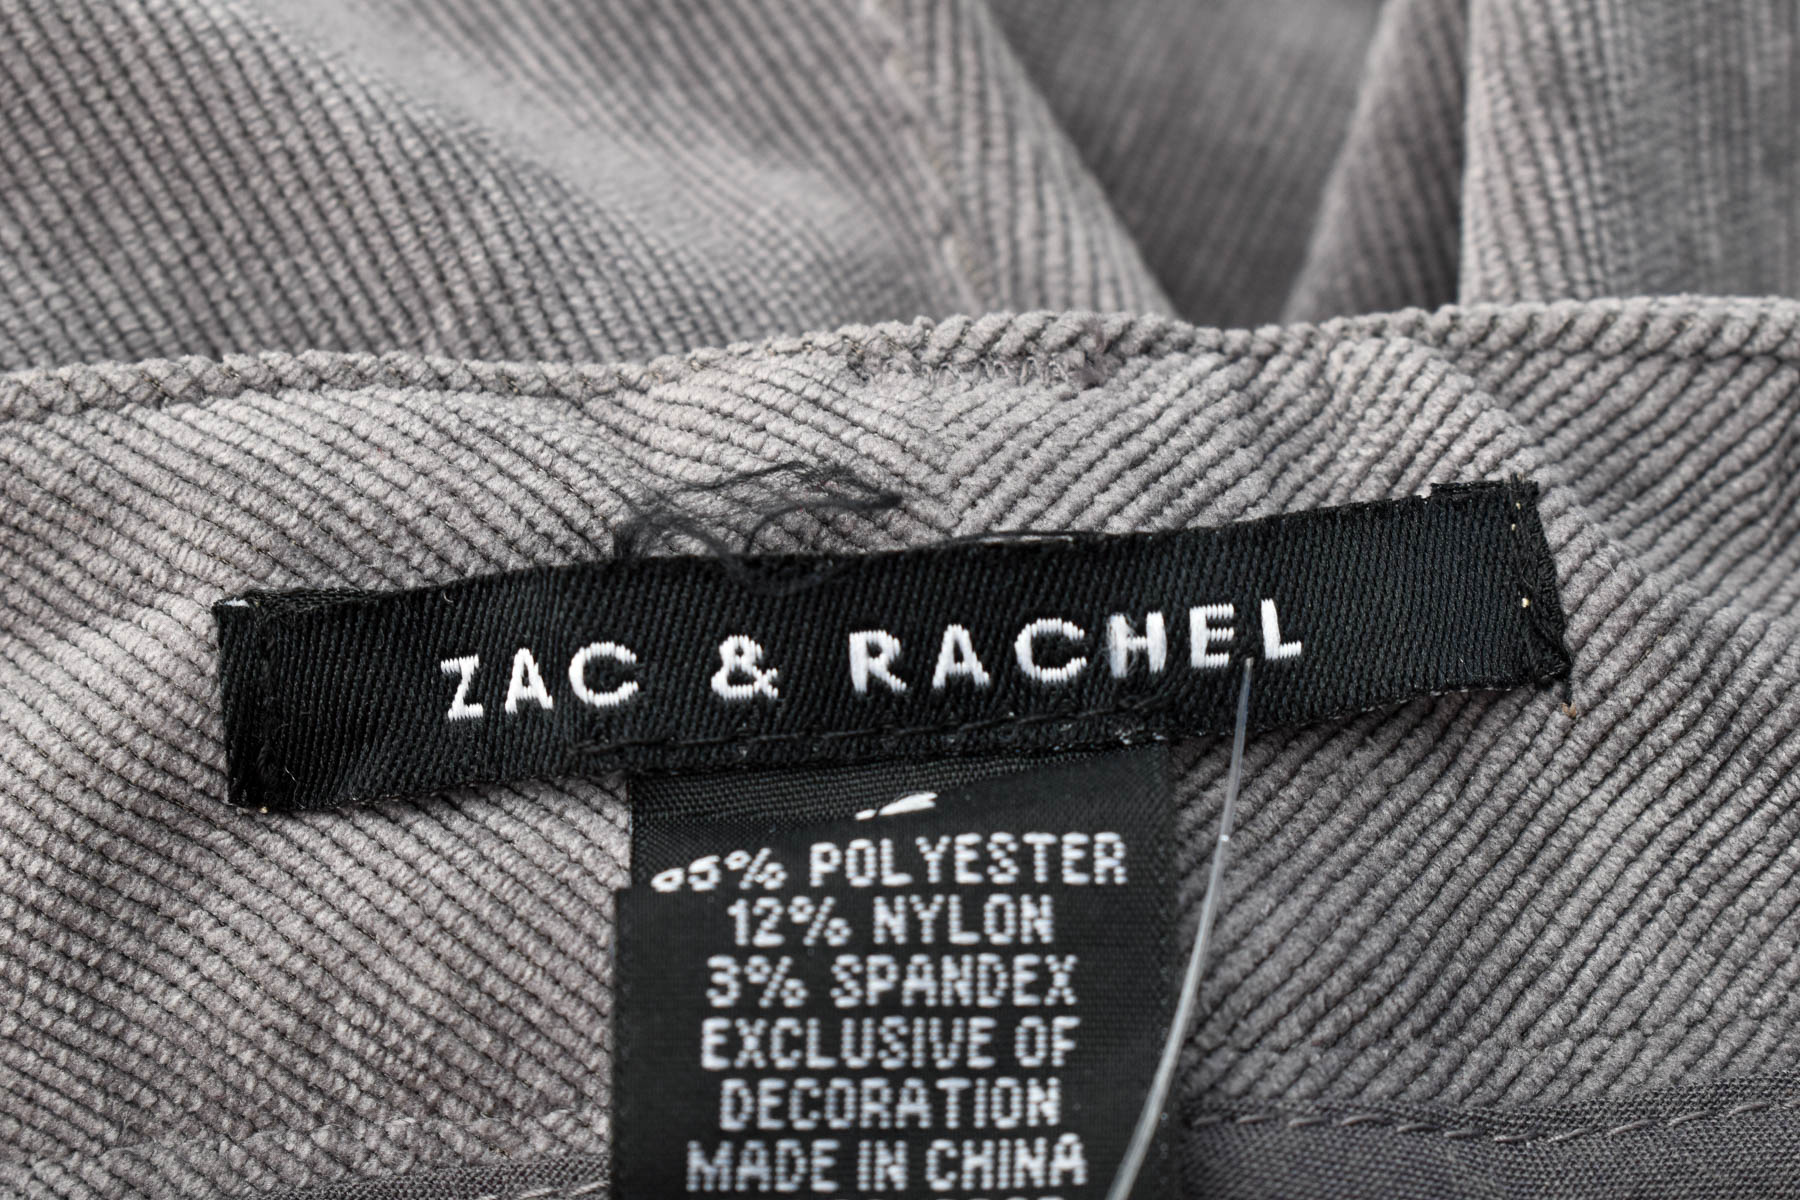 Γυναικεία παντελόνια - Zac & Rachel - 2